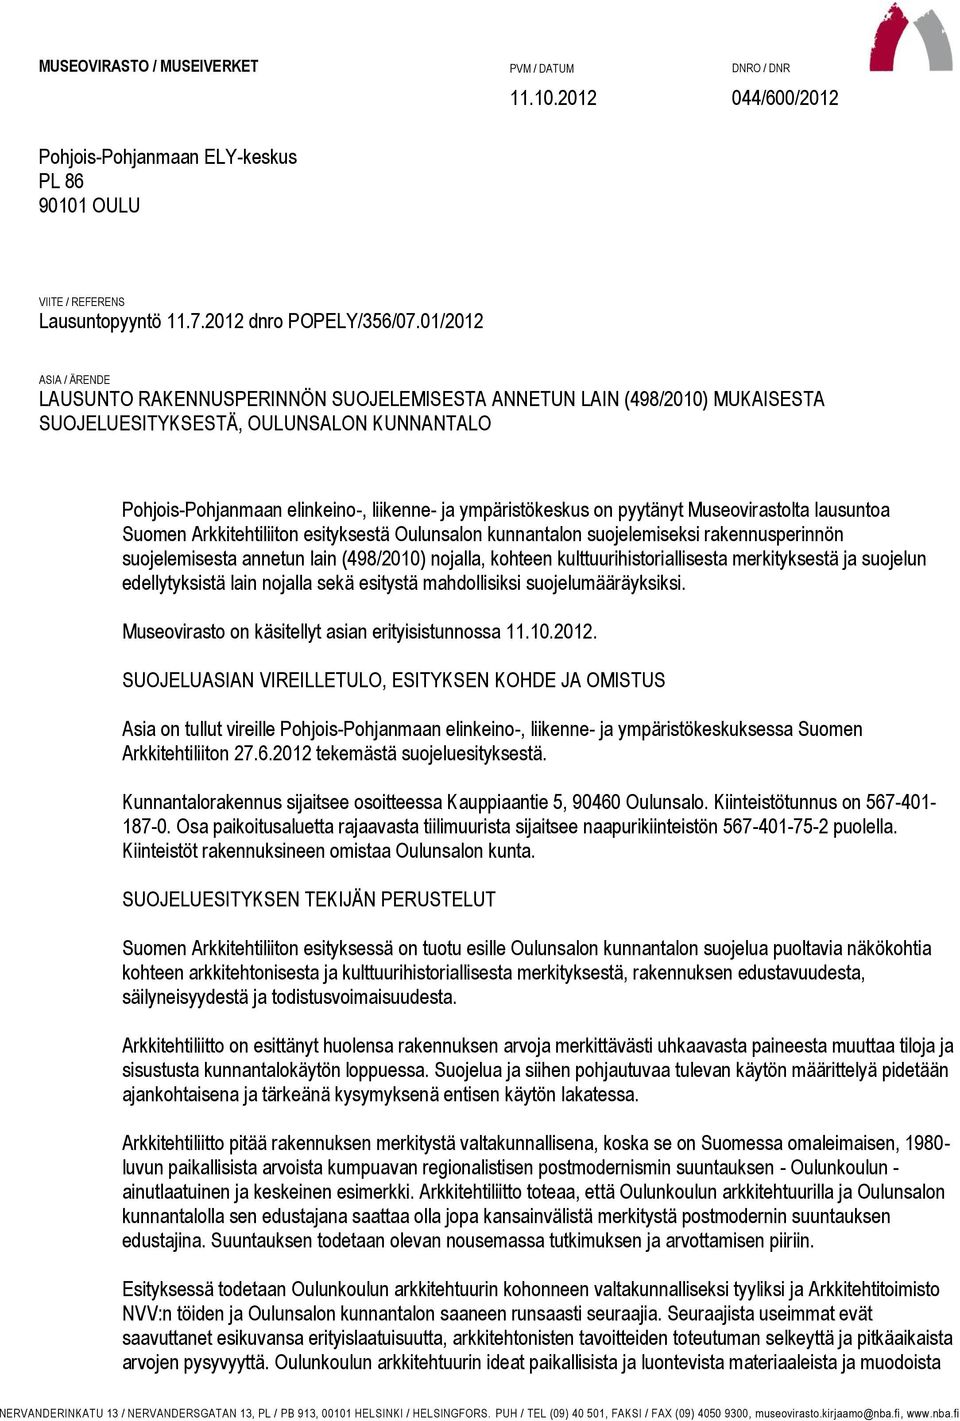 on pyytänyt Museovirastolta lausuntoa Suomen Arkkitehtiliiton esityksestä Oulunsalon kunnantalon suojelemiseksi rakennusperinnön suojelemisesta annetun lain (498/2010) nojalla, kohteen